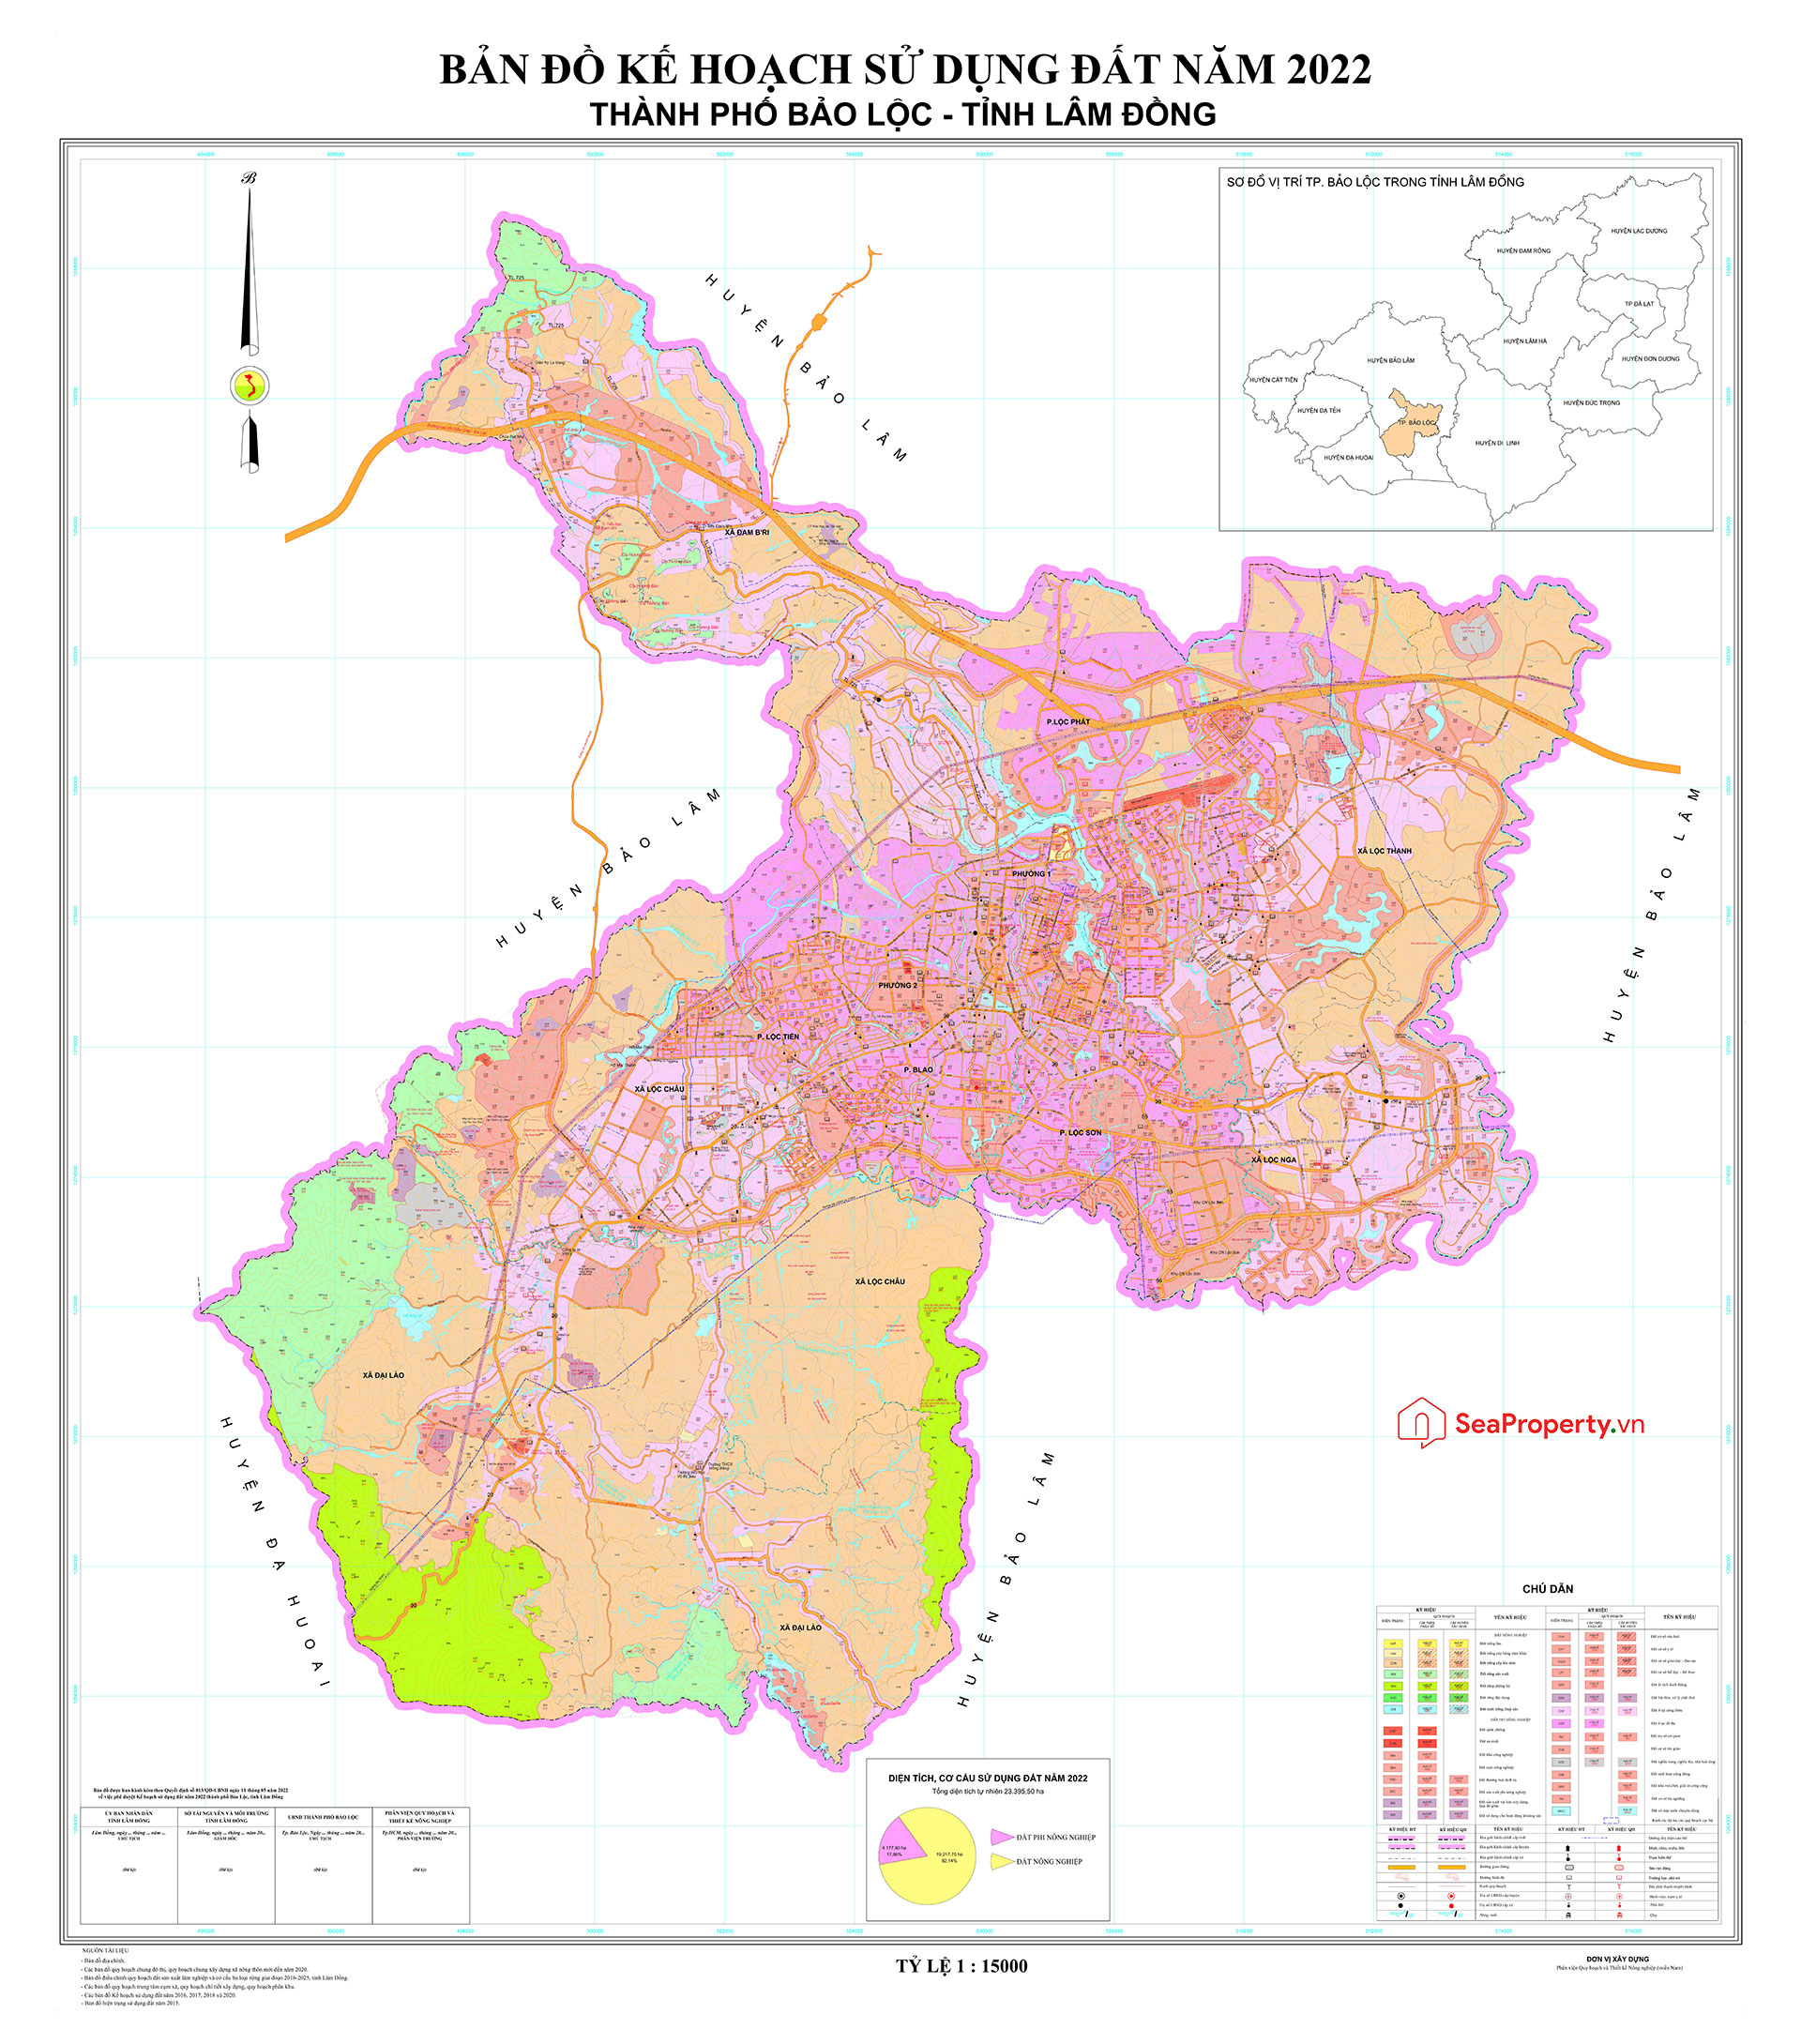 Công bố bản đồ quy hoạch sử dụng đất Thành phố Bảo Lộc